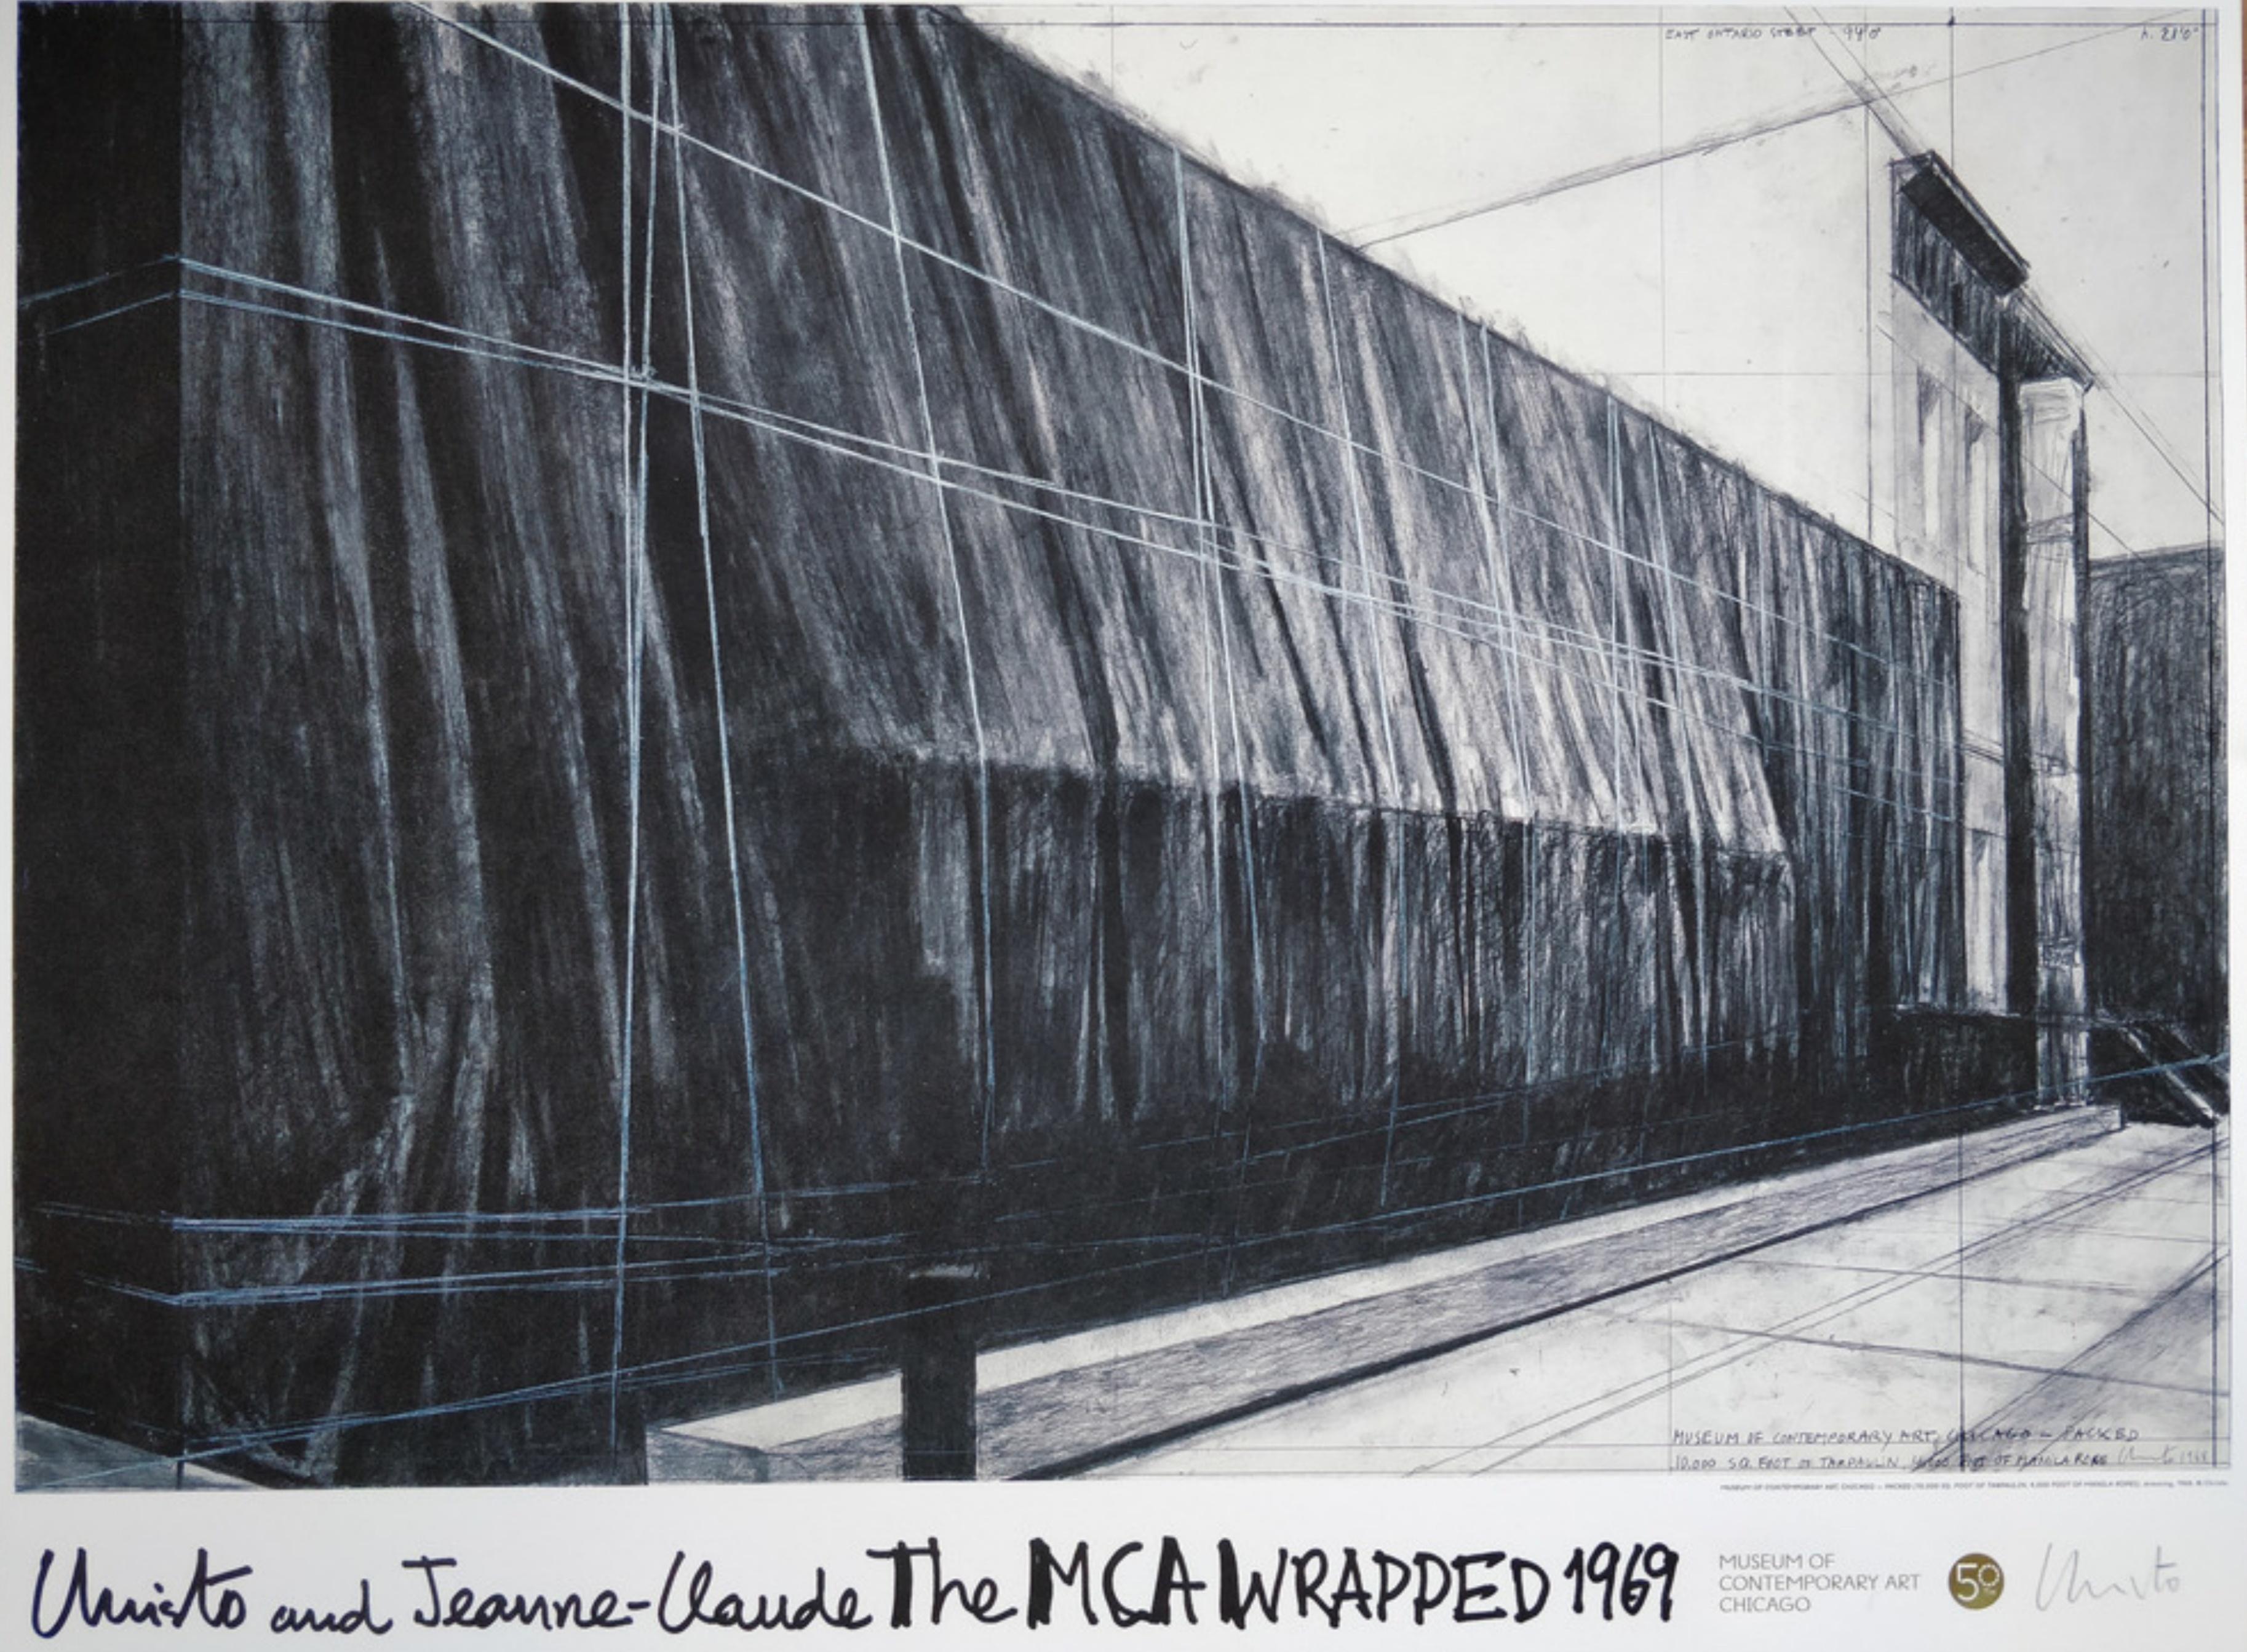 Abstract Print Christo and Jeanne-Claude - The Wrapped (MCA), Chicago 1969 (édition limitée à 200 exemplaires, signée à la main par Christo)